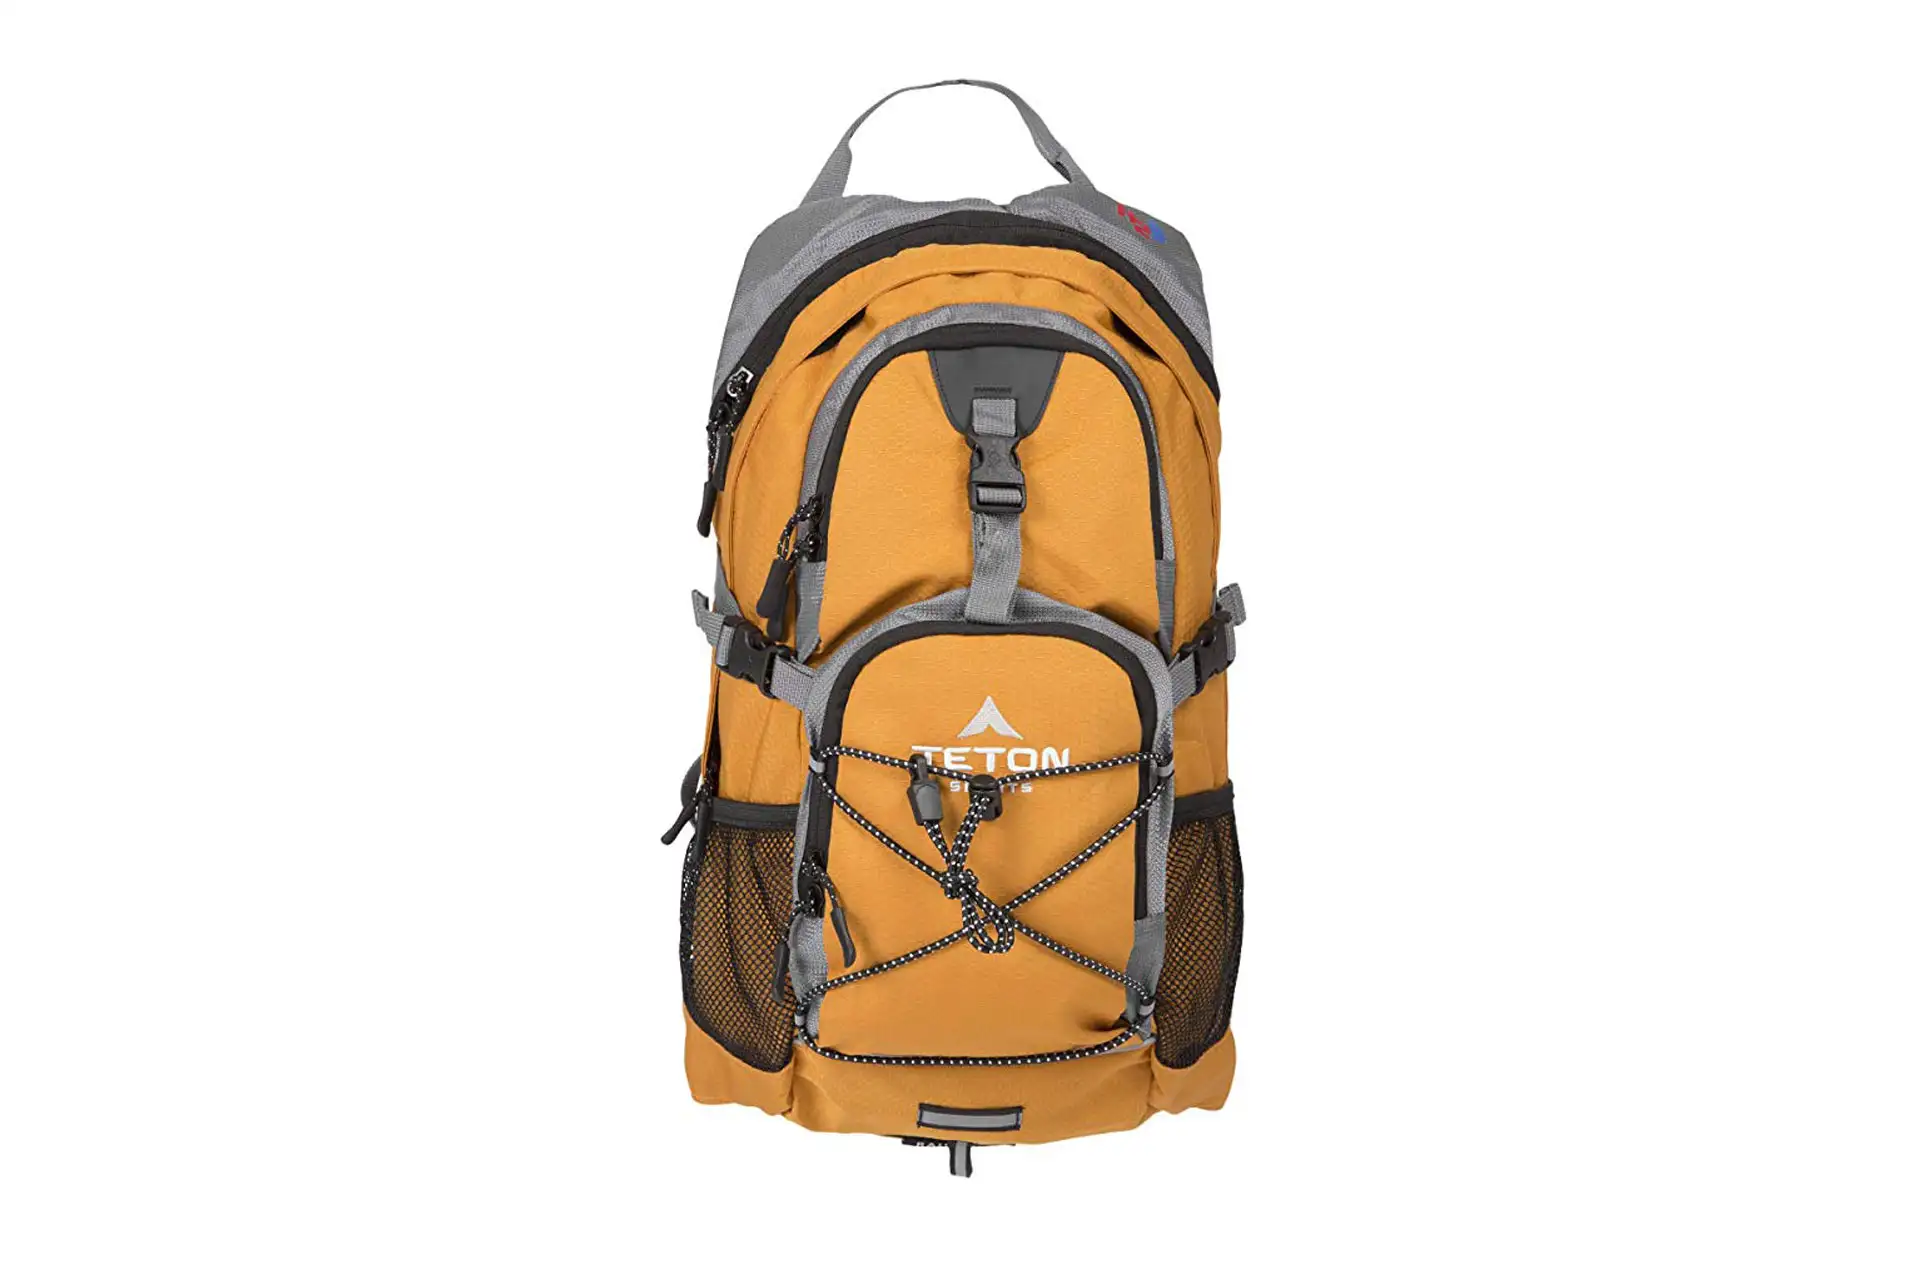 Teton Backpack; Courtesy of Amazon